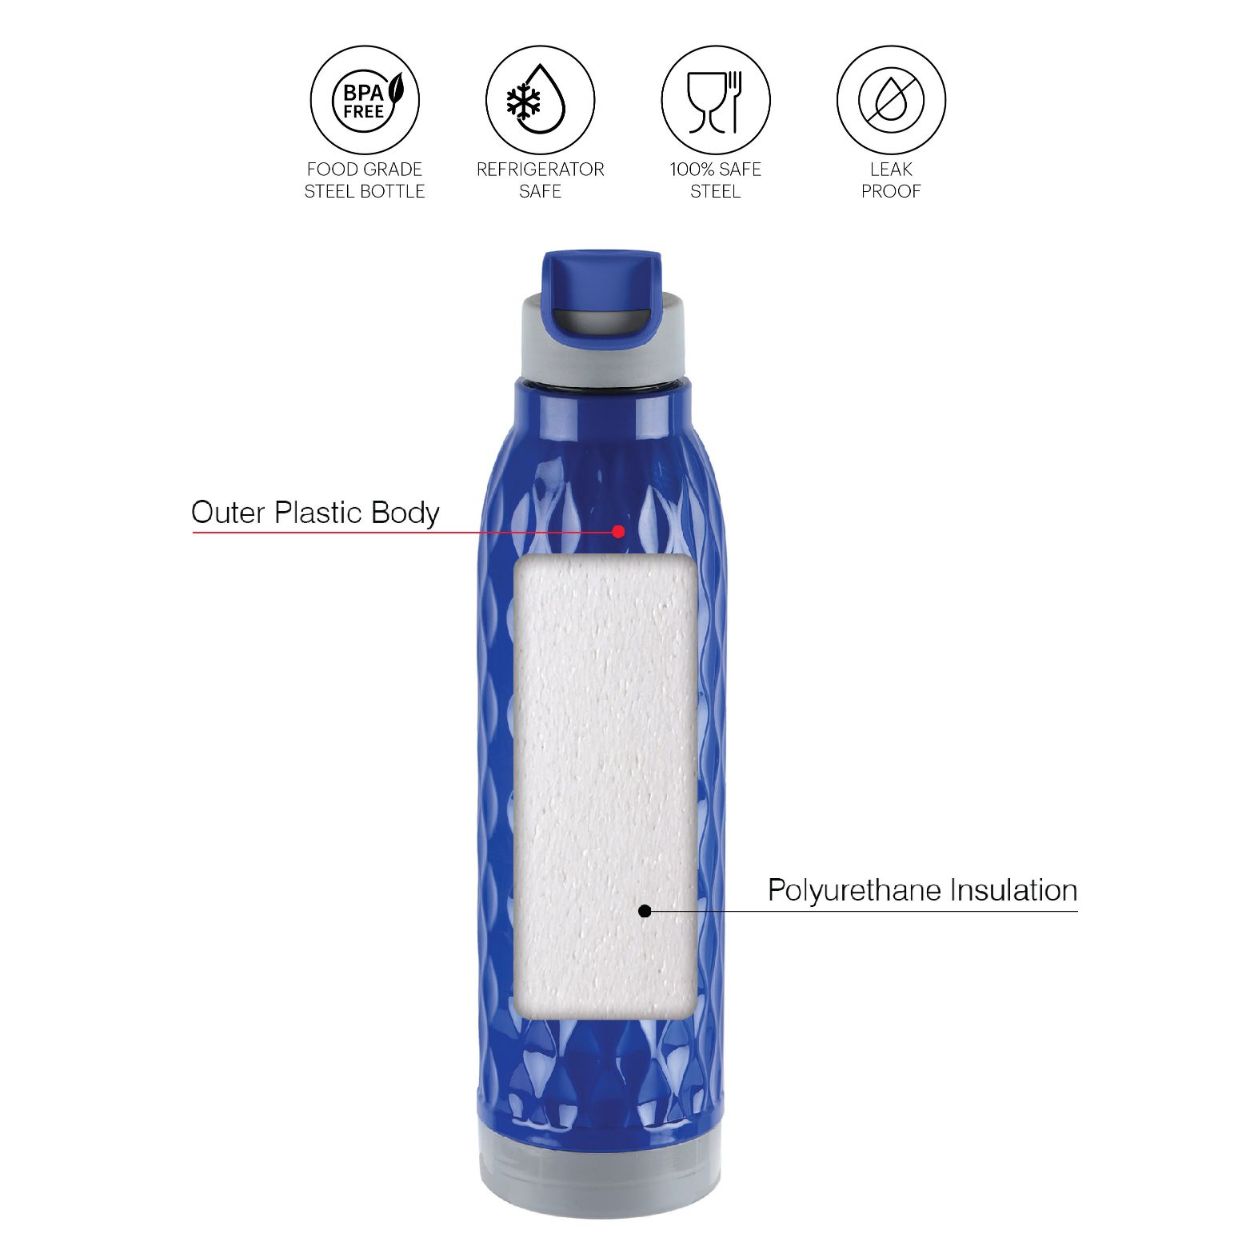 Puro Wave 900 Water Bottle, 690ml / 690ml